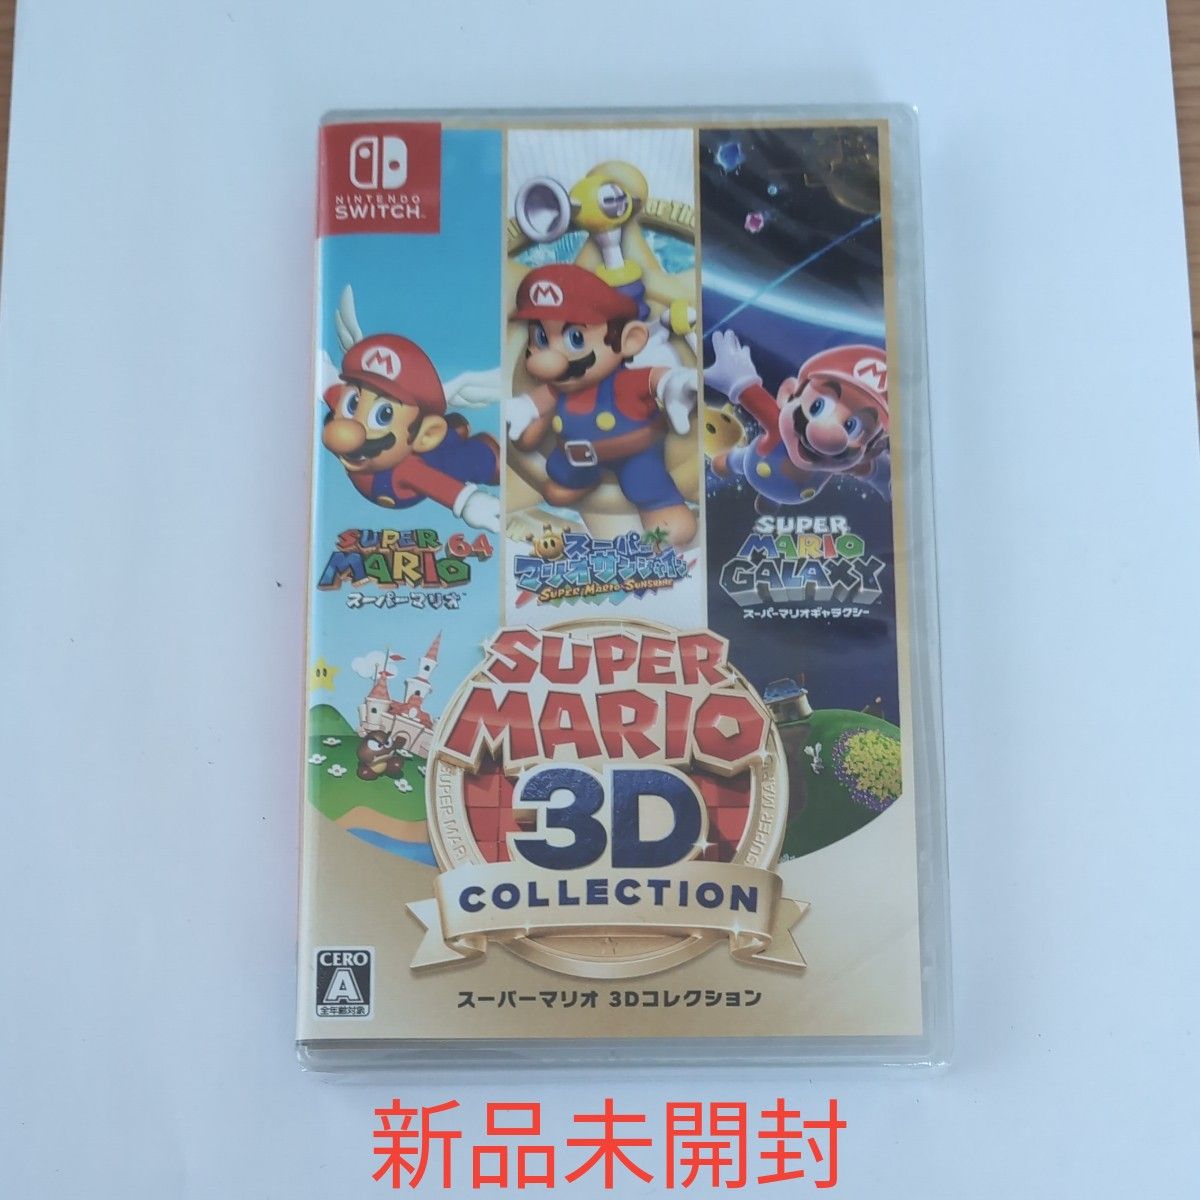 【新品未開封品】スーパーマリオ 3Dコレクション Nintendo Switch